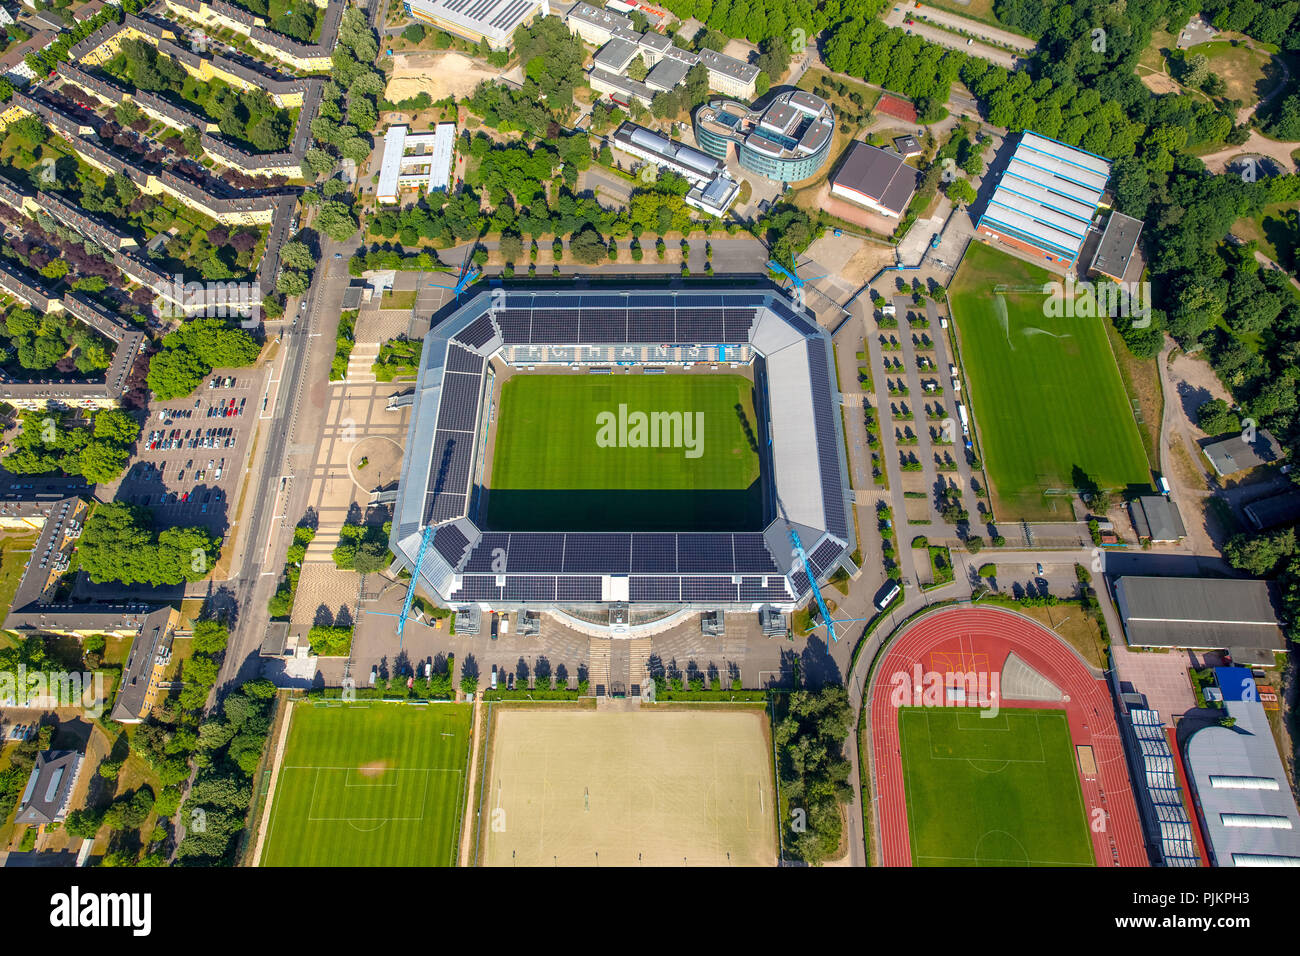 Stade de la mer Baltique, du stade de la Bundesliga, le FC Hansa Rostock, Rostock, Mecklembourg-Poméranie-Occidentale, de la mer Baltique, Allemagne Banque D'Images